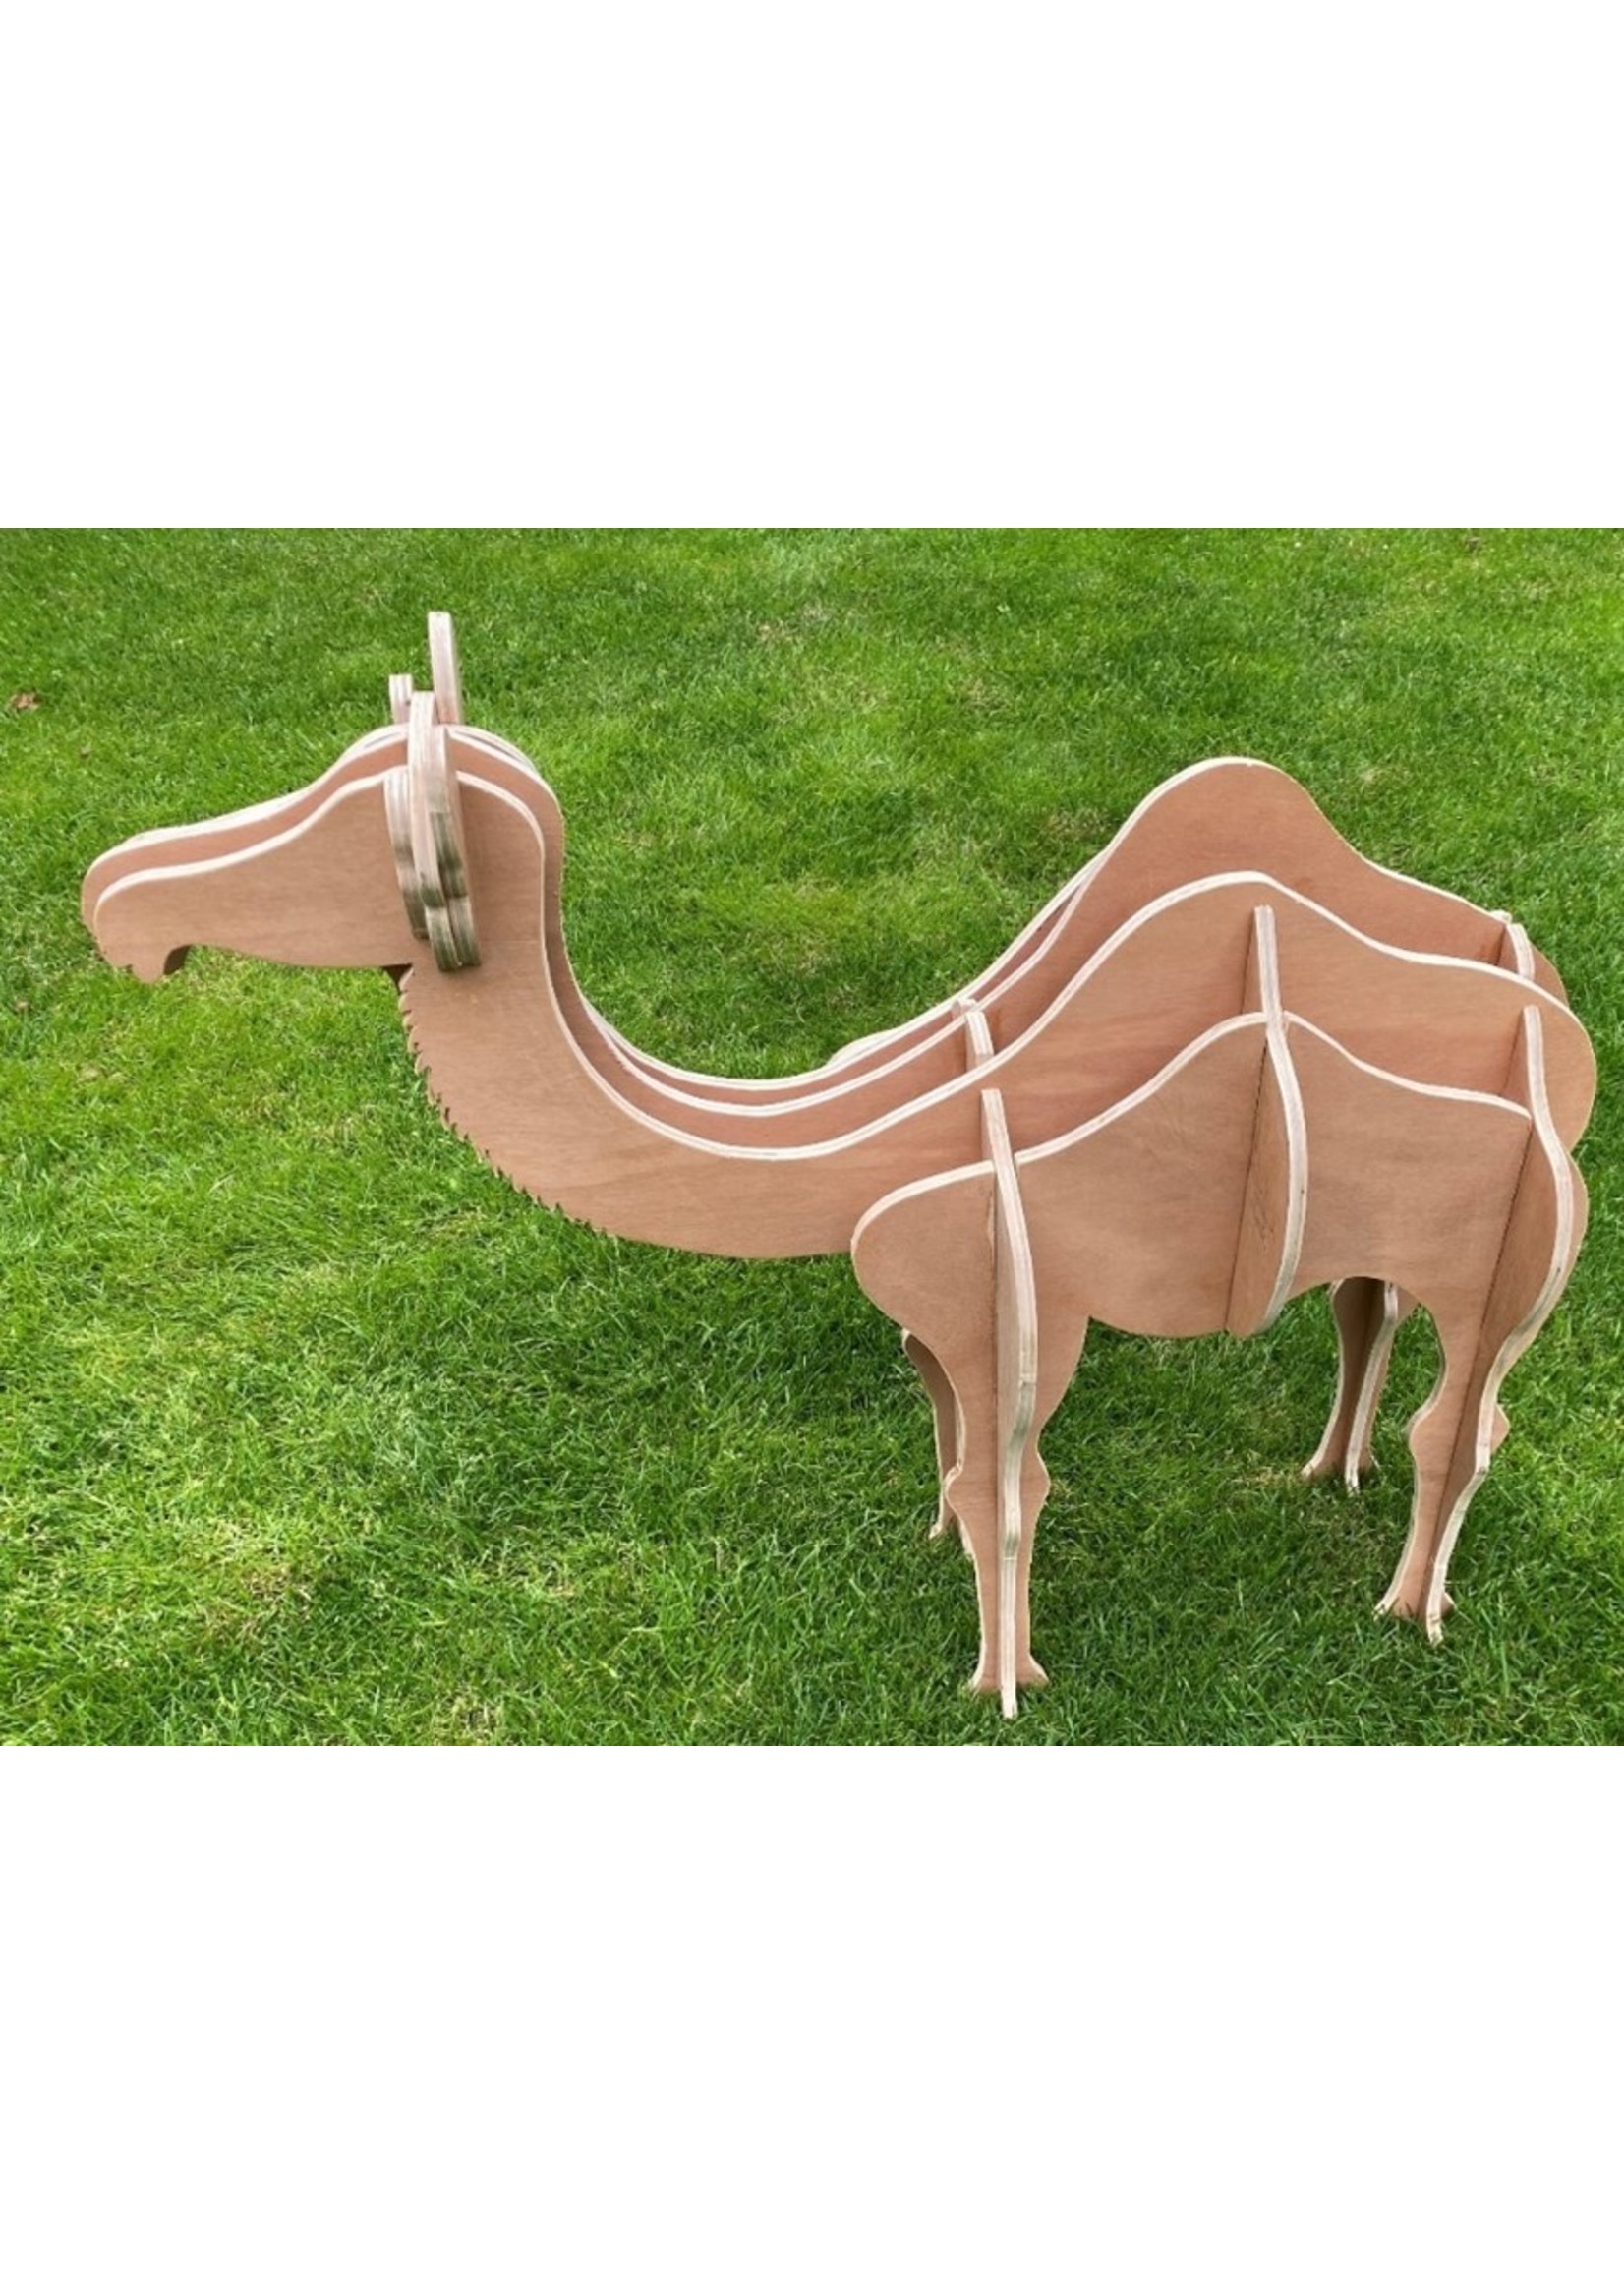 Kamel aus Holz - Bauzeichnung um ein Kamel selber zu machen